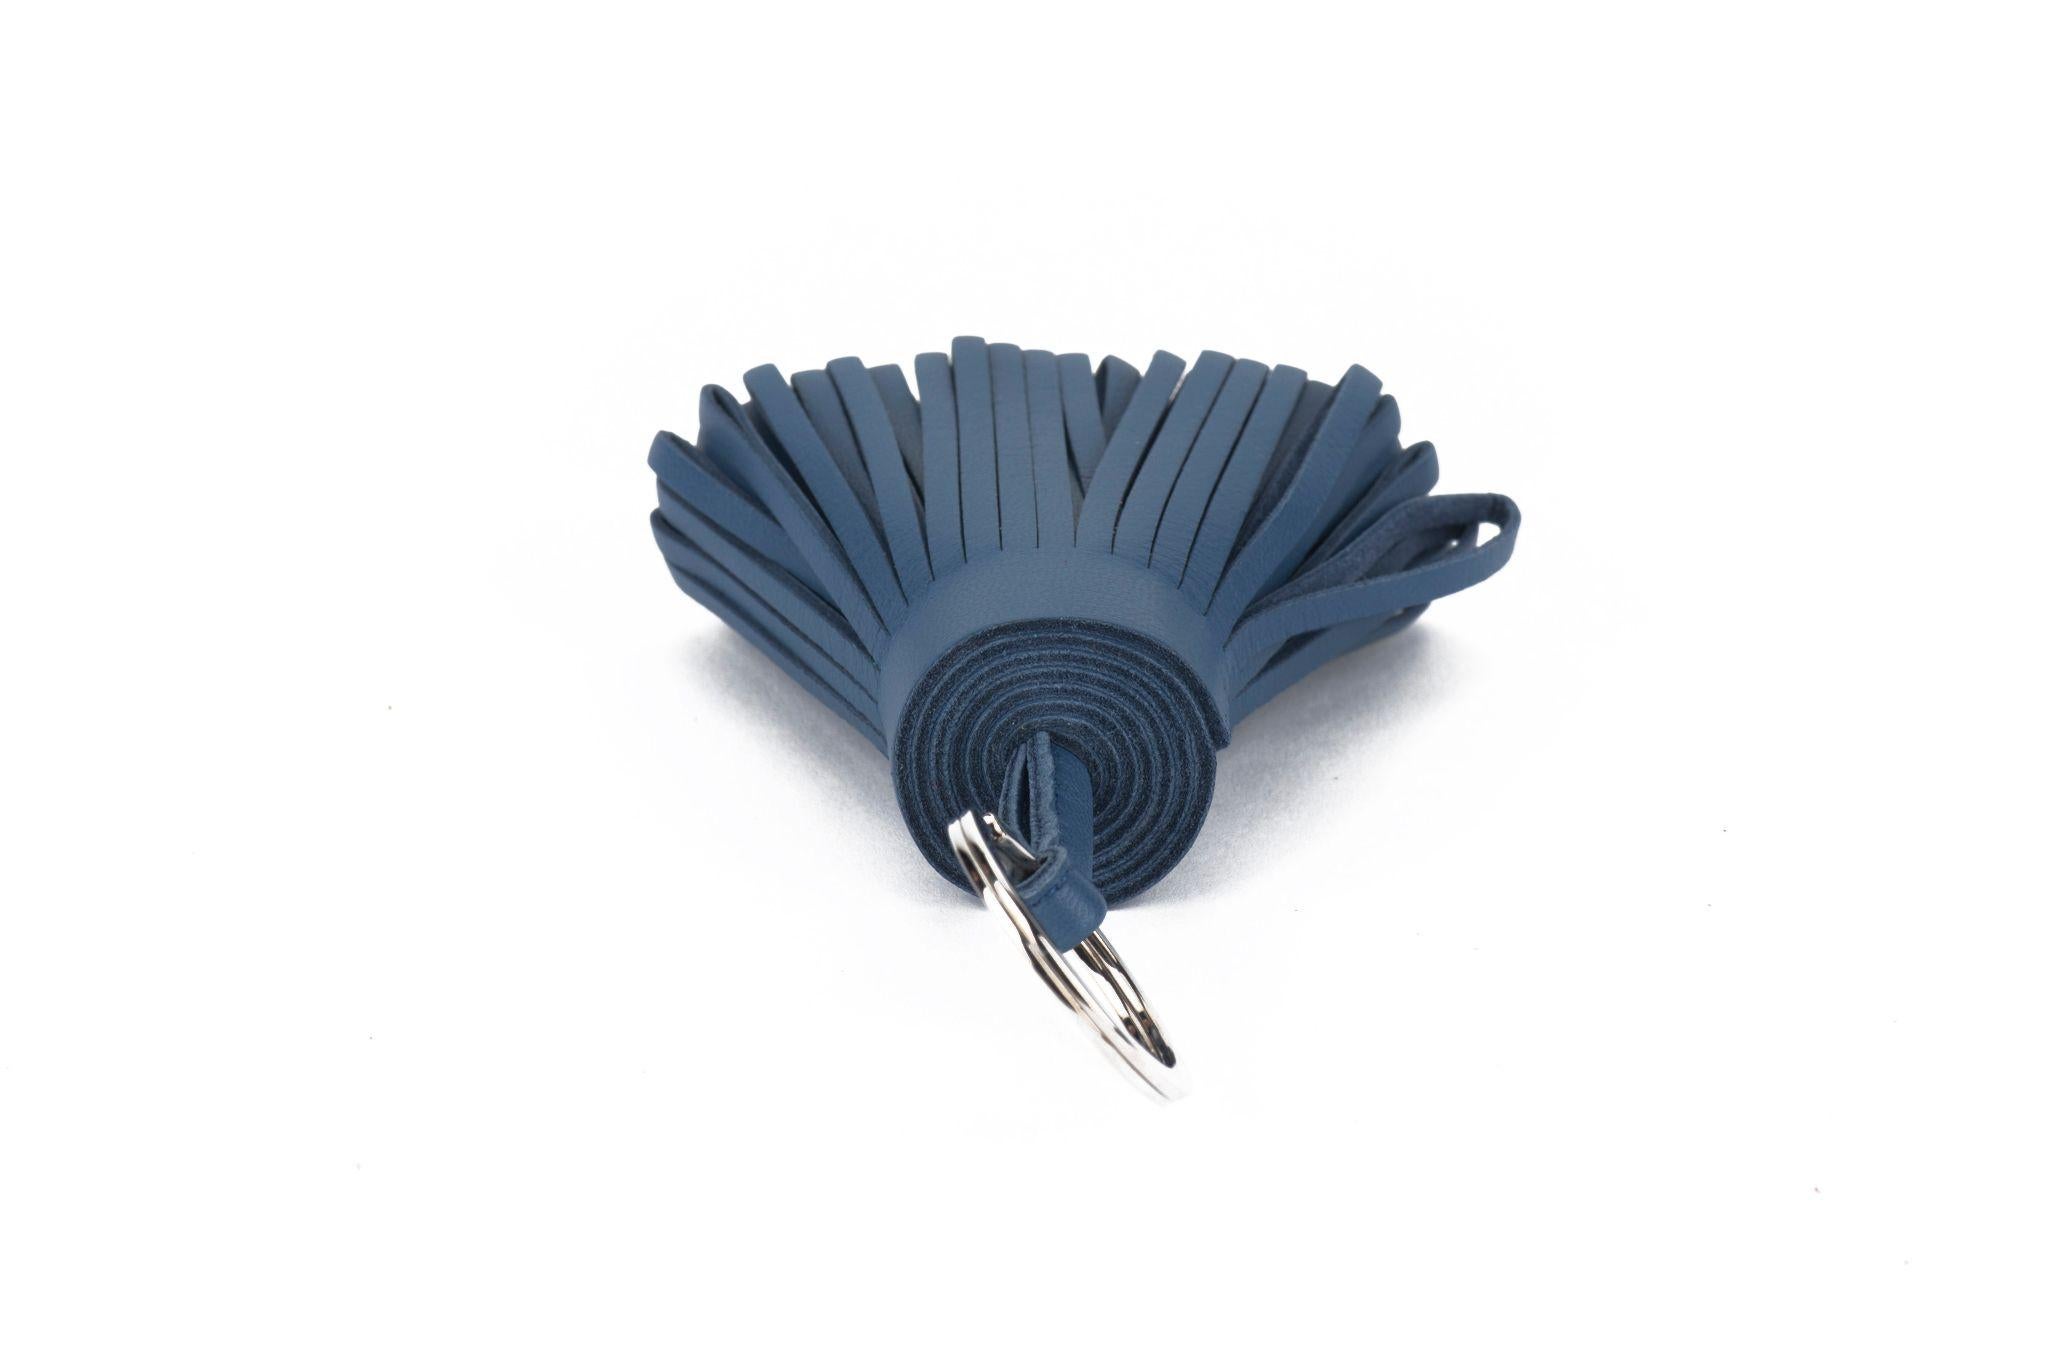 Hermès Schlüsselanhänger Carmen aus blauem Brighton-Lammfell mit Quaste. Brandneu mit Originalverpackung in unbenutztem Zustand.